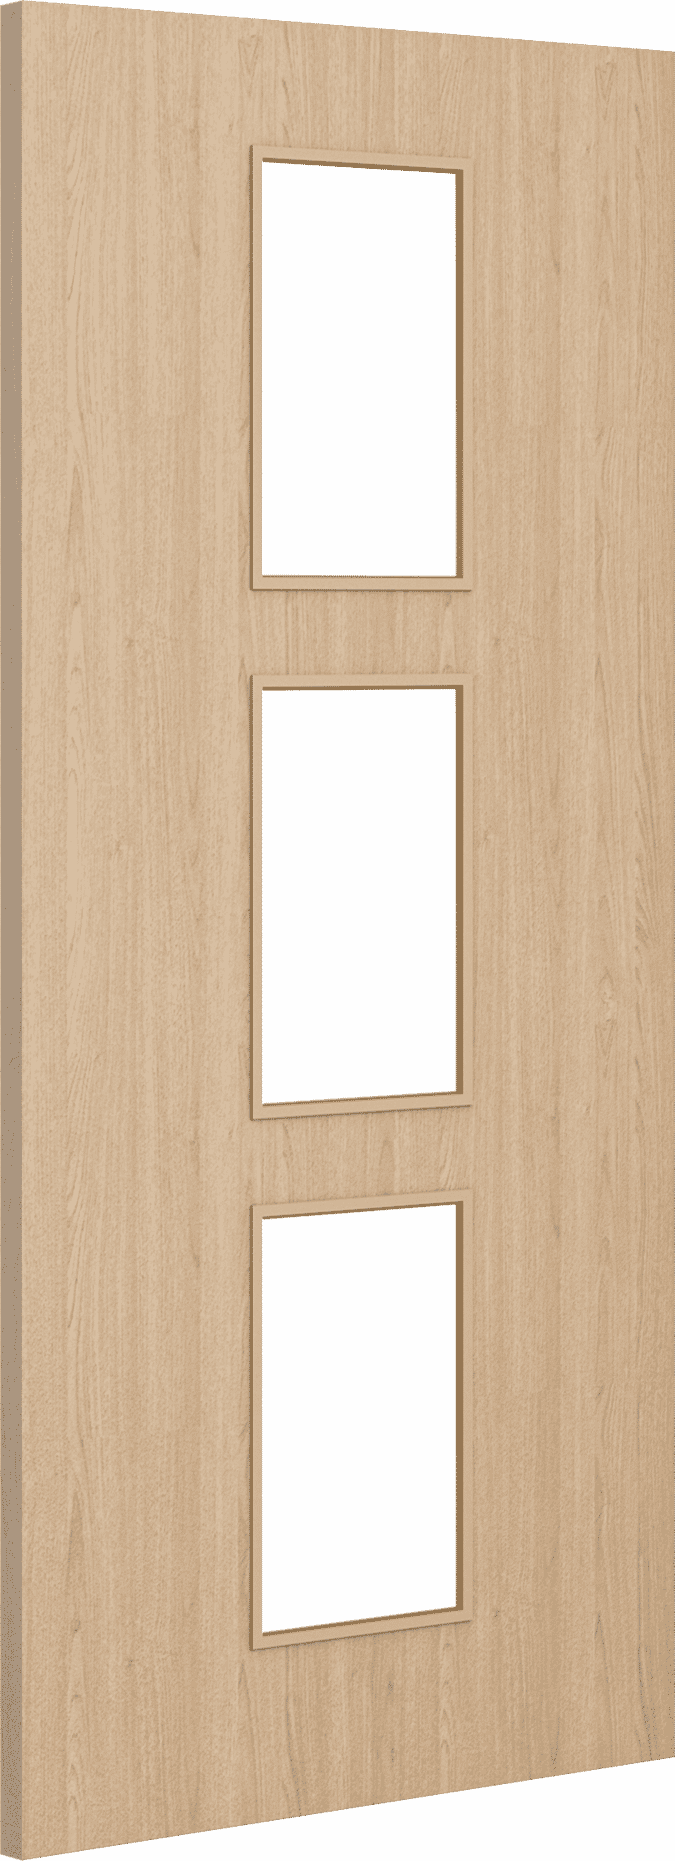 1981mm x 838mm x 44mm (33") Architectural Oak 11 Clear Glazed - Prefinished FD30 Fire Door Blank